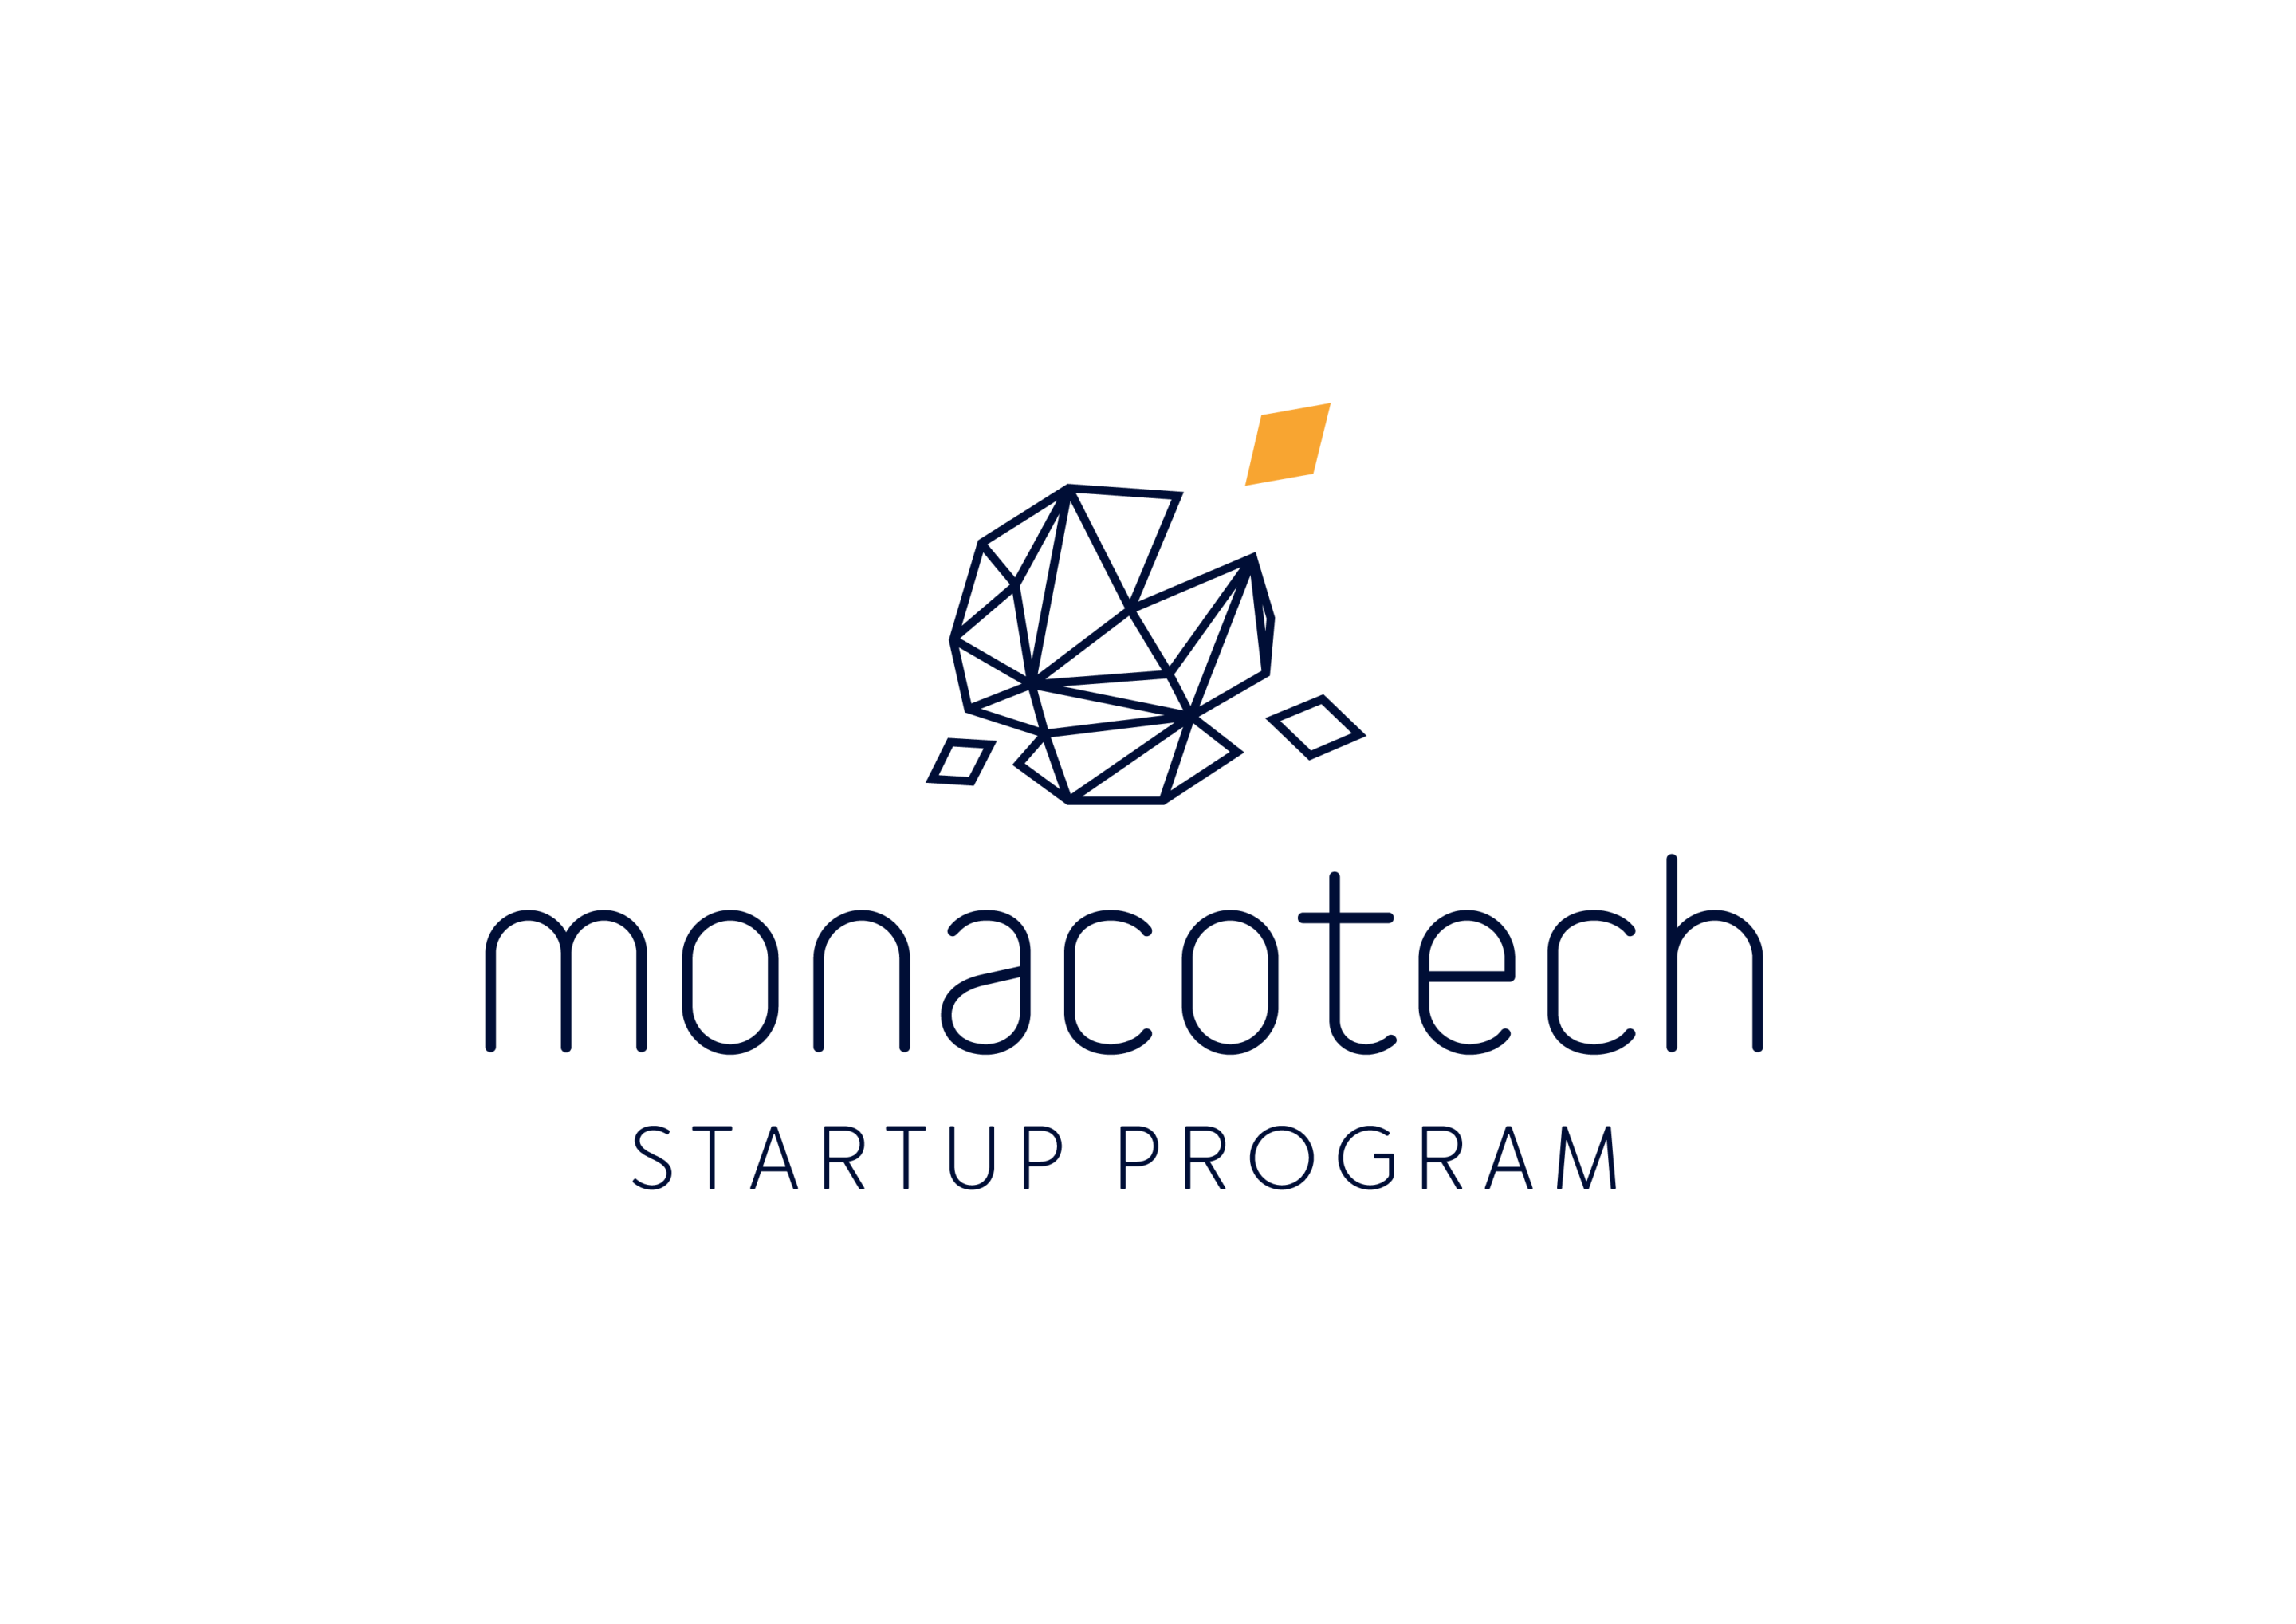 MonacoTech logo bicolore